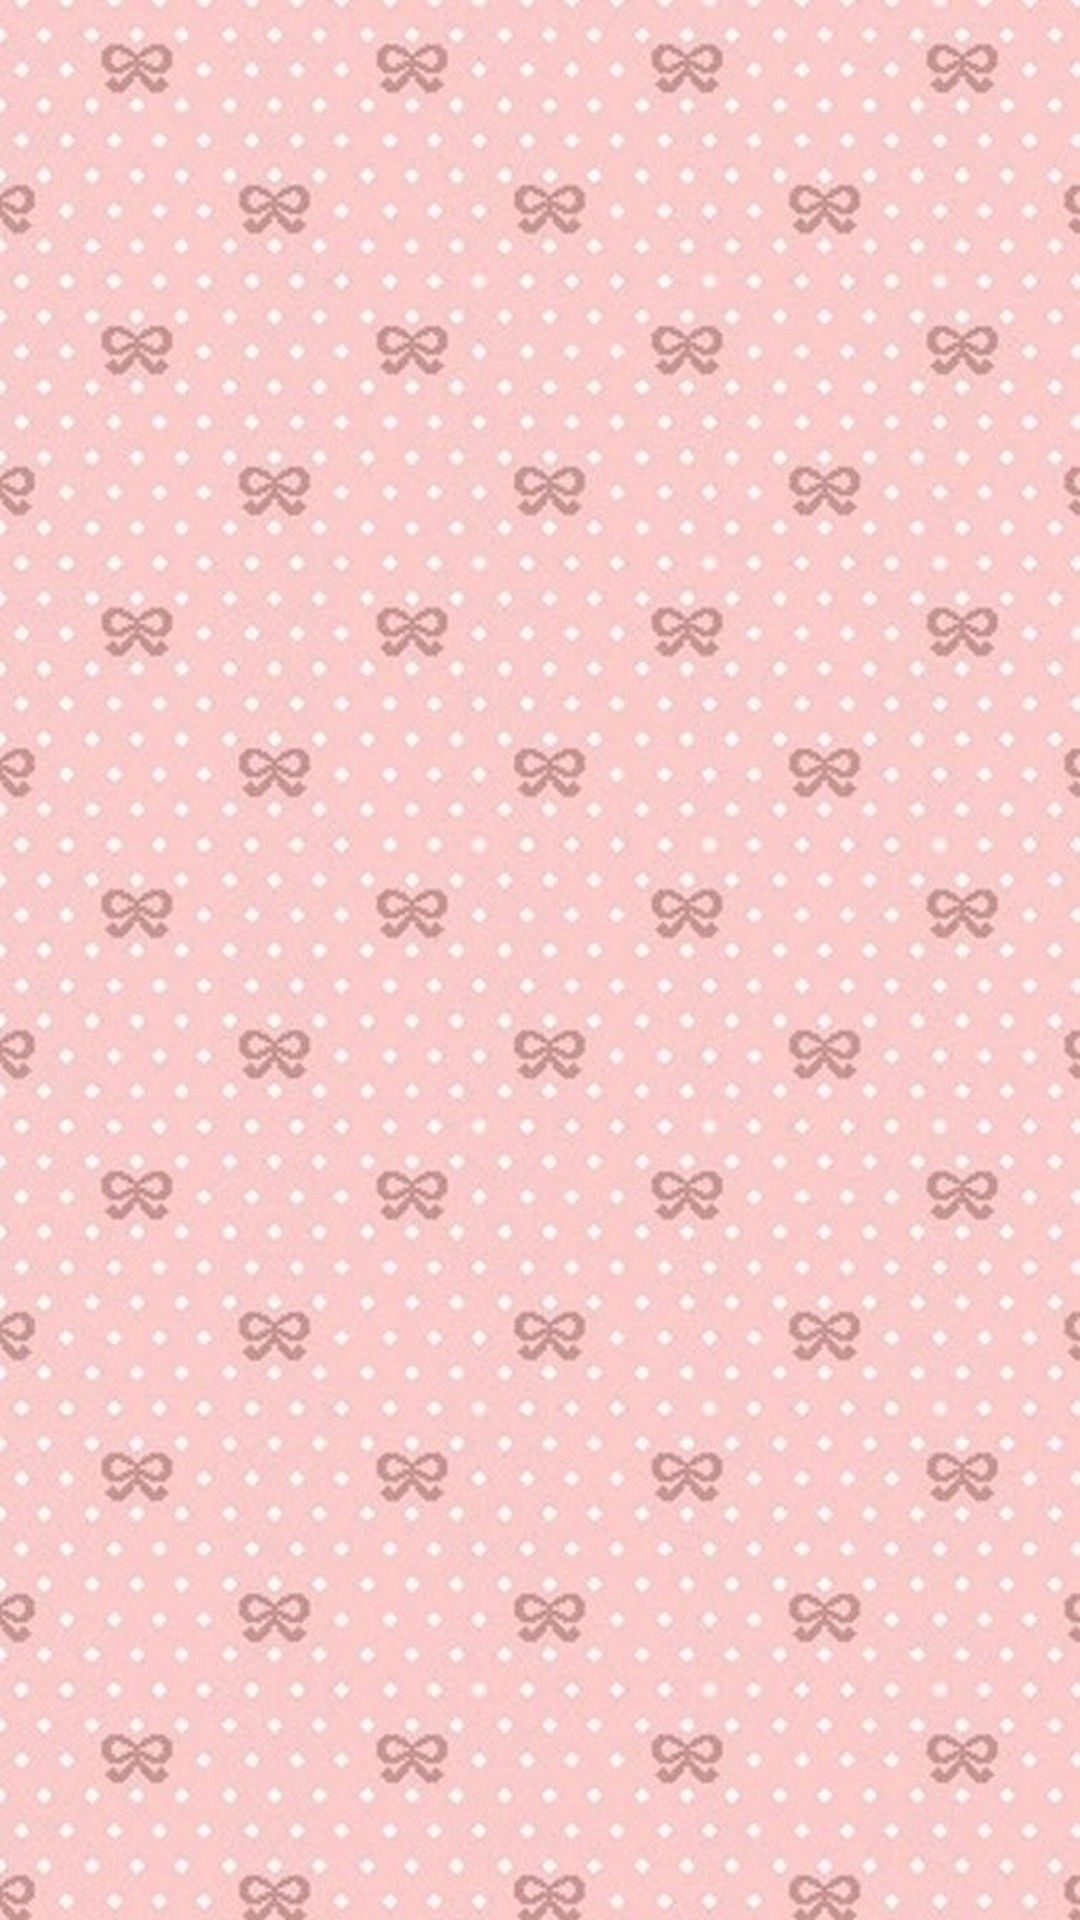 Cute Pink Phone Wallpaper. Phone wallpaper pink